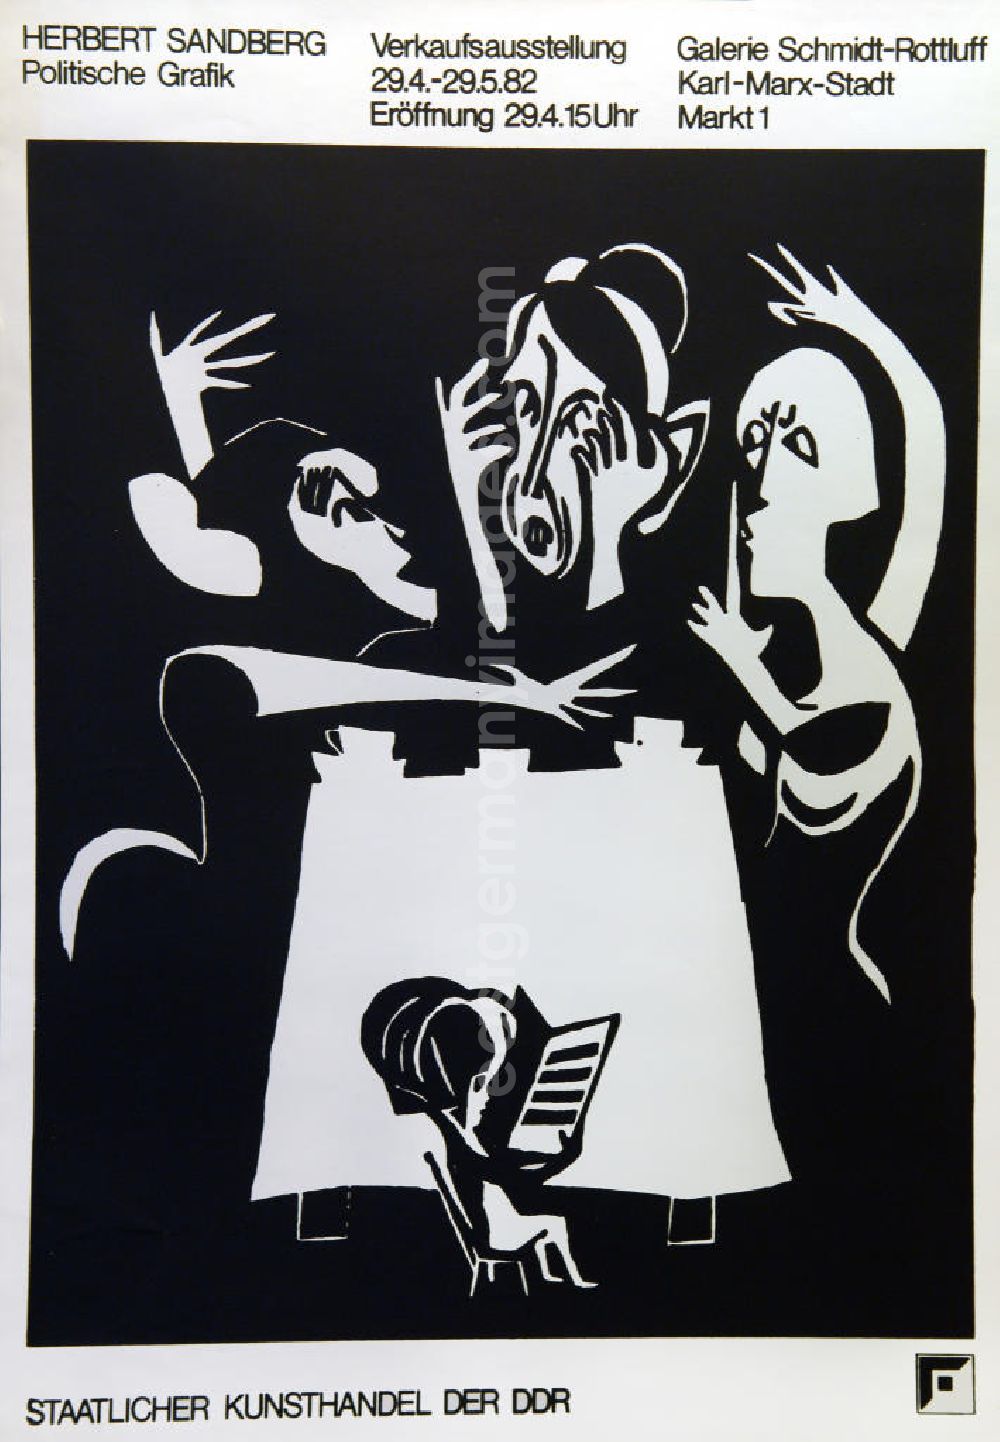 Berlin: Plakat der Ausstellung Herbert Sandberg, politische Grafik vom 29.04.-29.05.1982 Galerie Schmidt-Rottluff, Staatlicher Kunsthandel der DDR, 57,0x81,